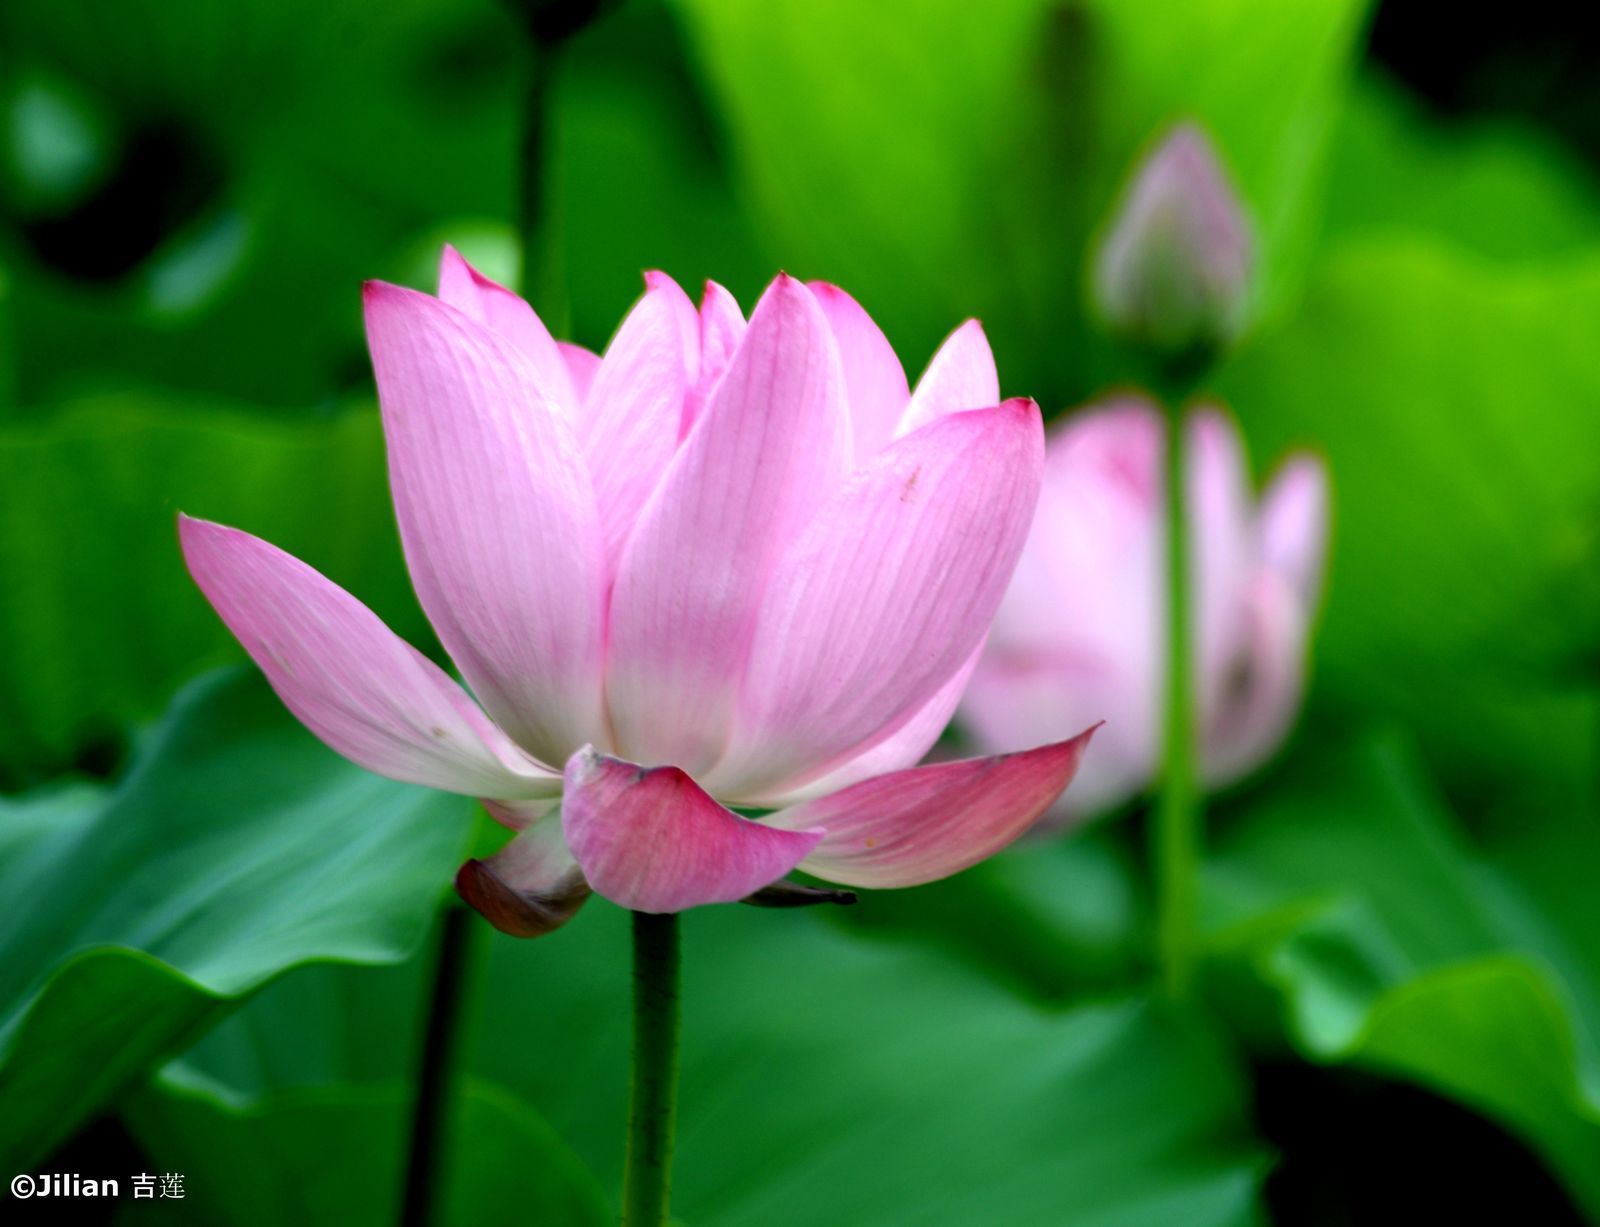 Le lotus en Chine, symbole de pureté - 莲花是中国纯洁的象征